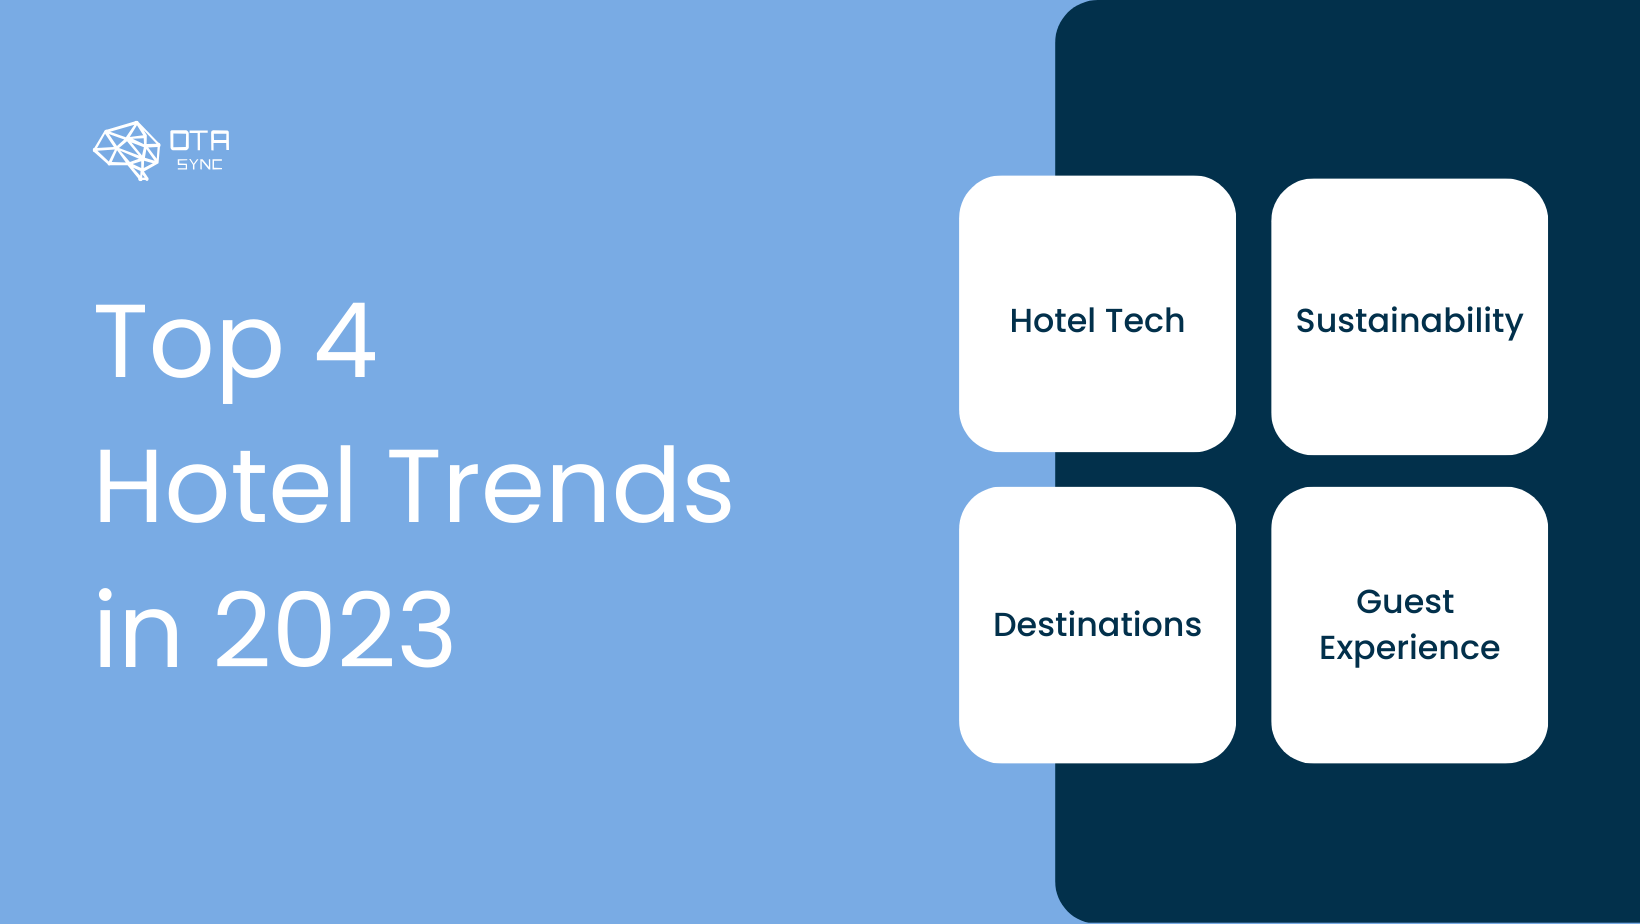 Top 4 Hotel Trends in 2023